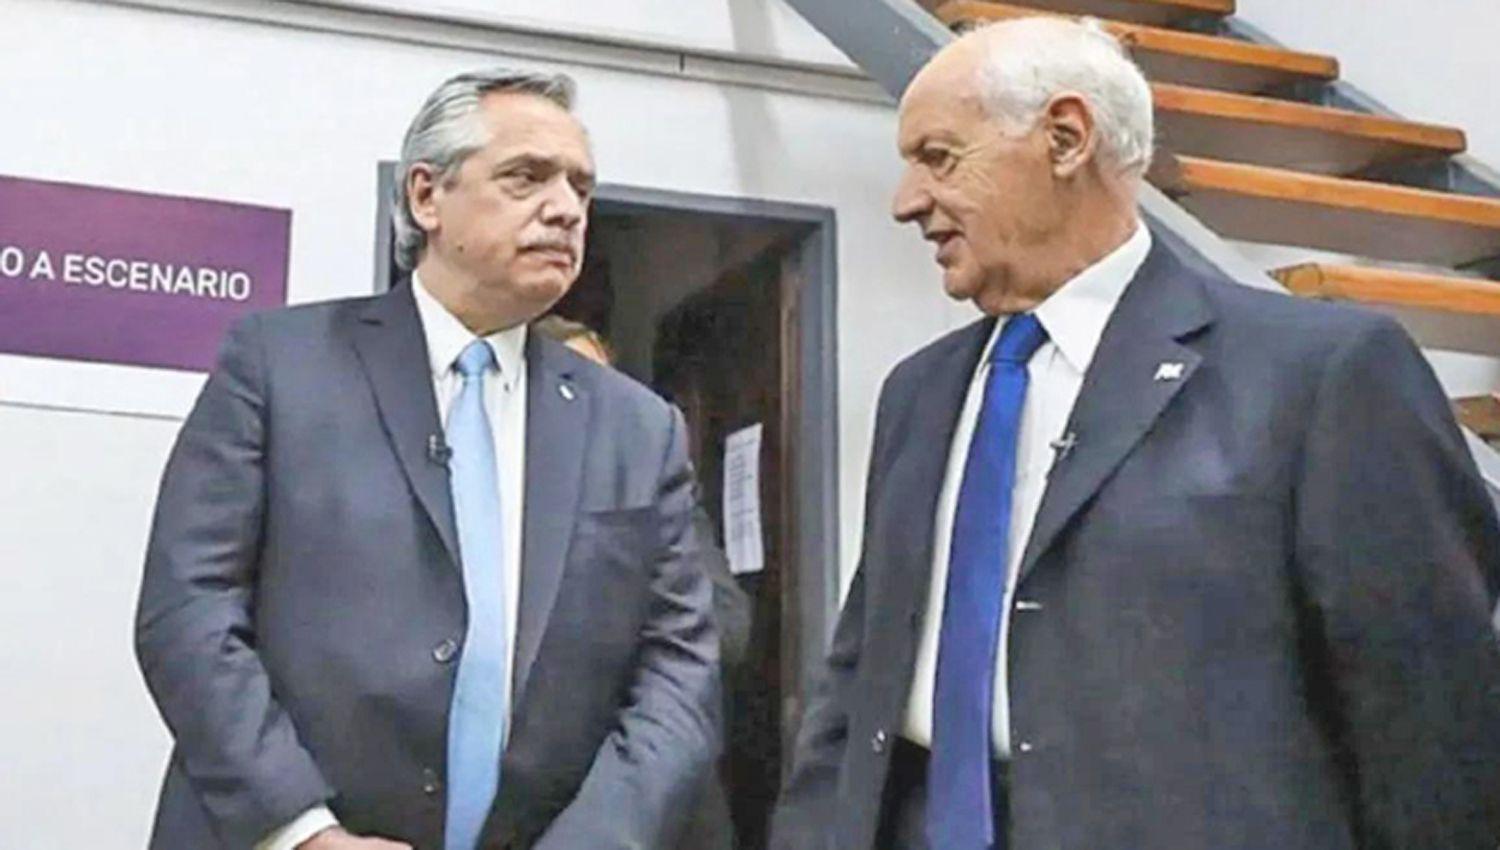 TRATO Fern�ndez y Lavagna son viejos conocidos y compartieron el mismo espacio político en el Frente Renovador de Sergio Massa
